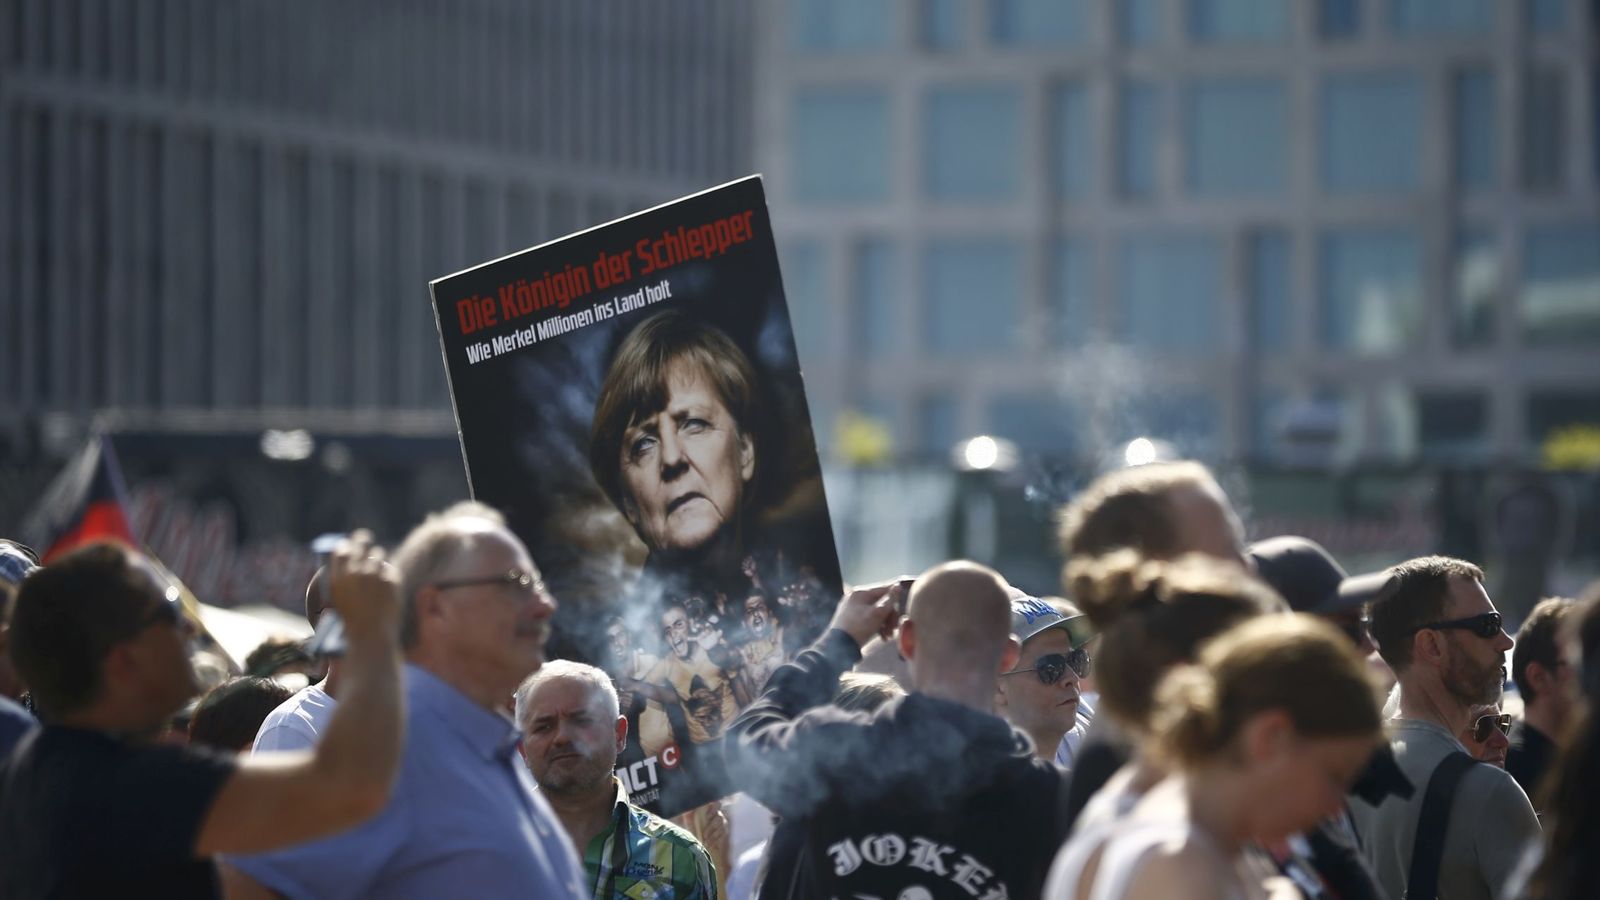 Foto: Participantes de la manifiestación en Berlín. (Reuters)